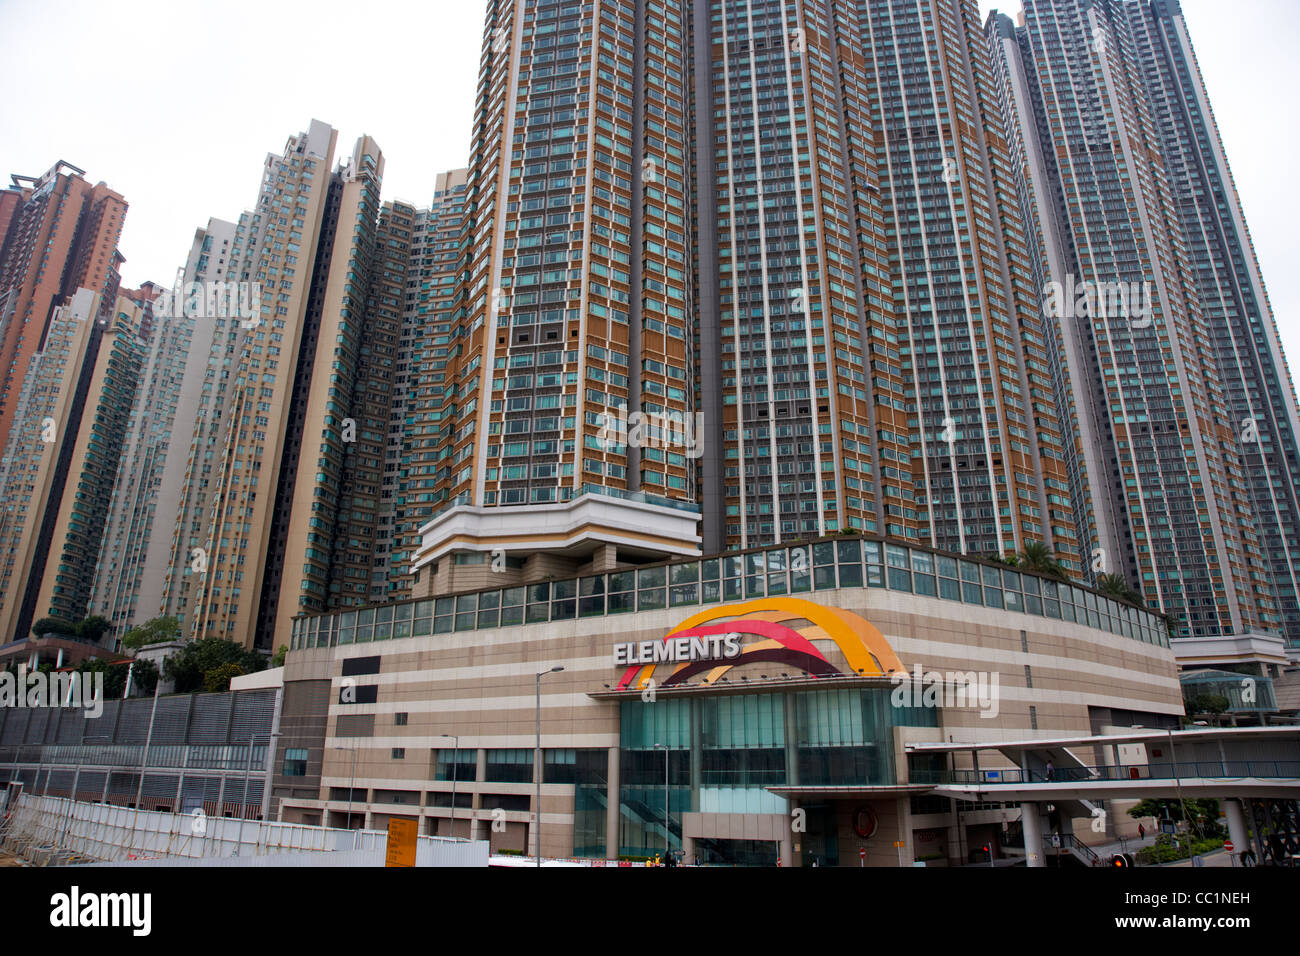 elements shopping mall hong kong with sorrento and waterfront apartment blocks hong kong hksar china asia Stock Photo